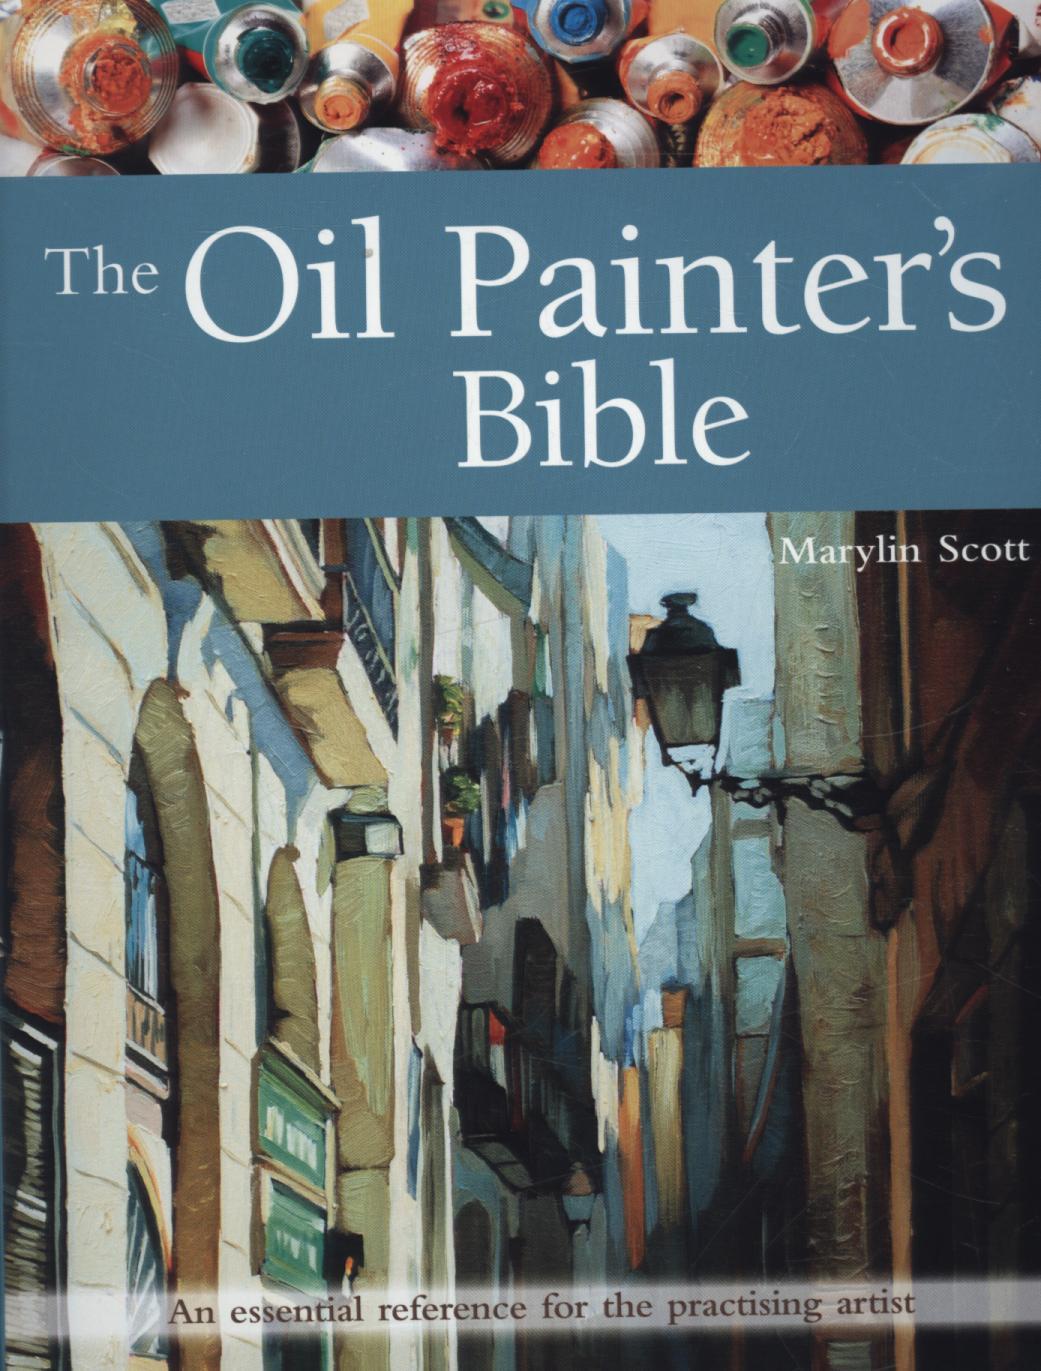 Oil Painter's Bible